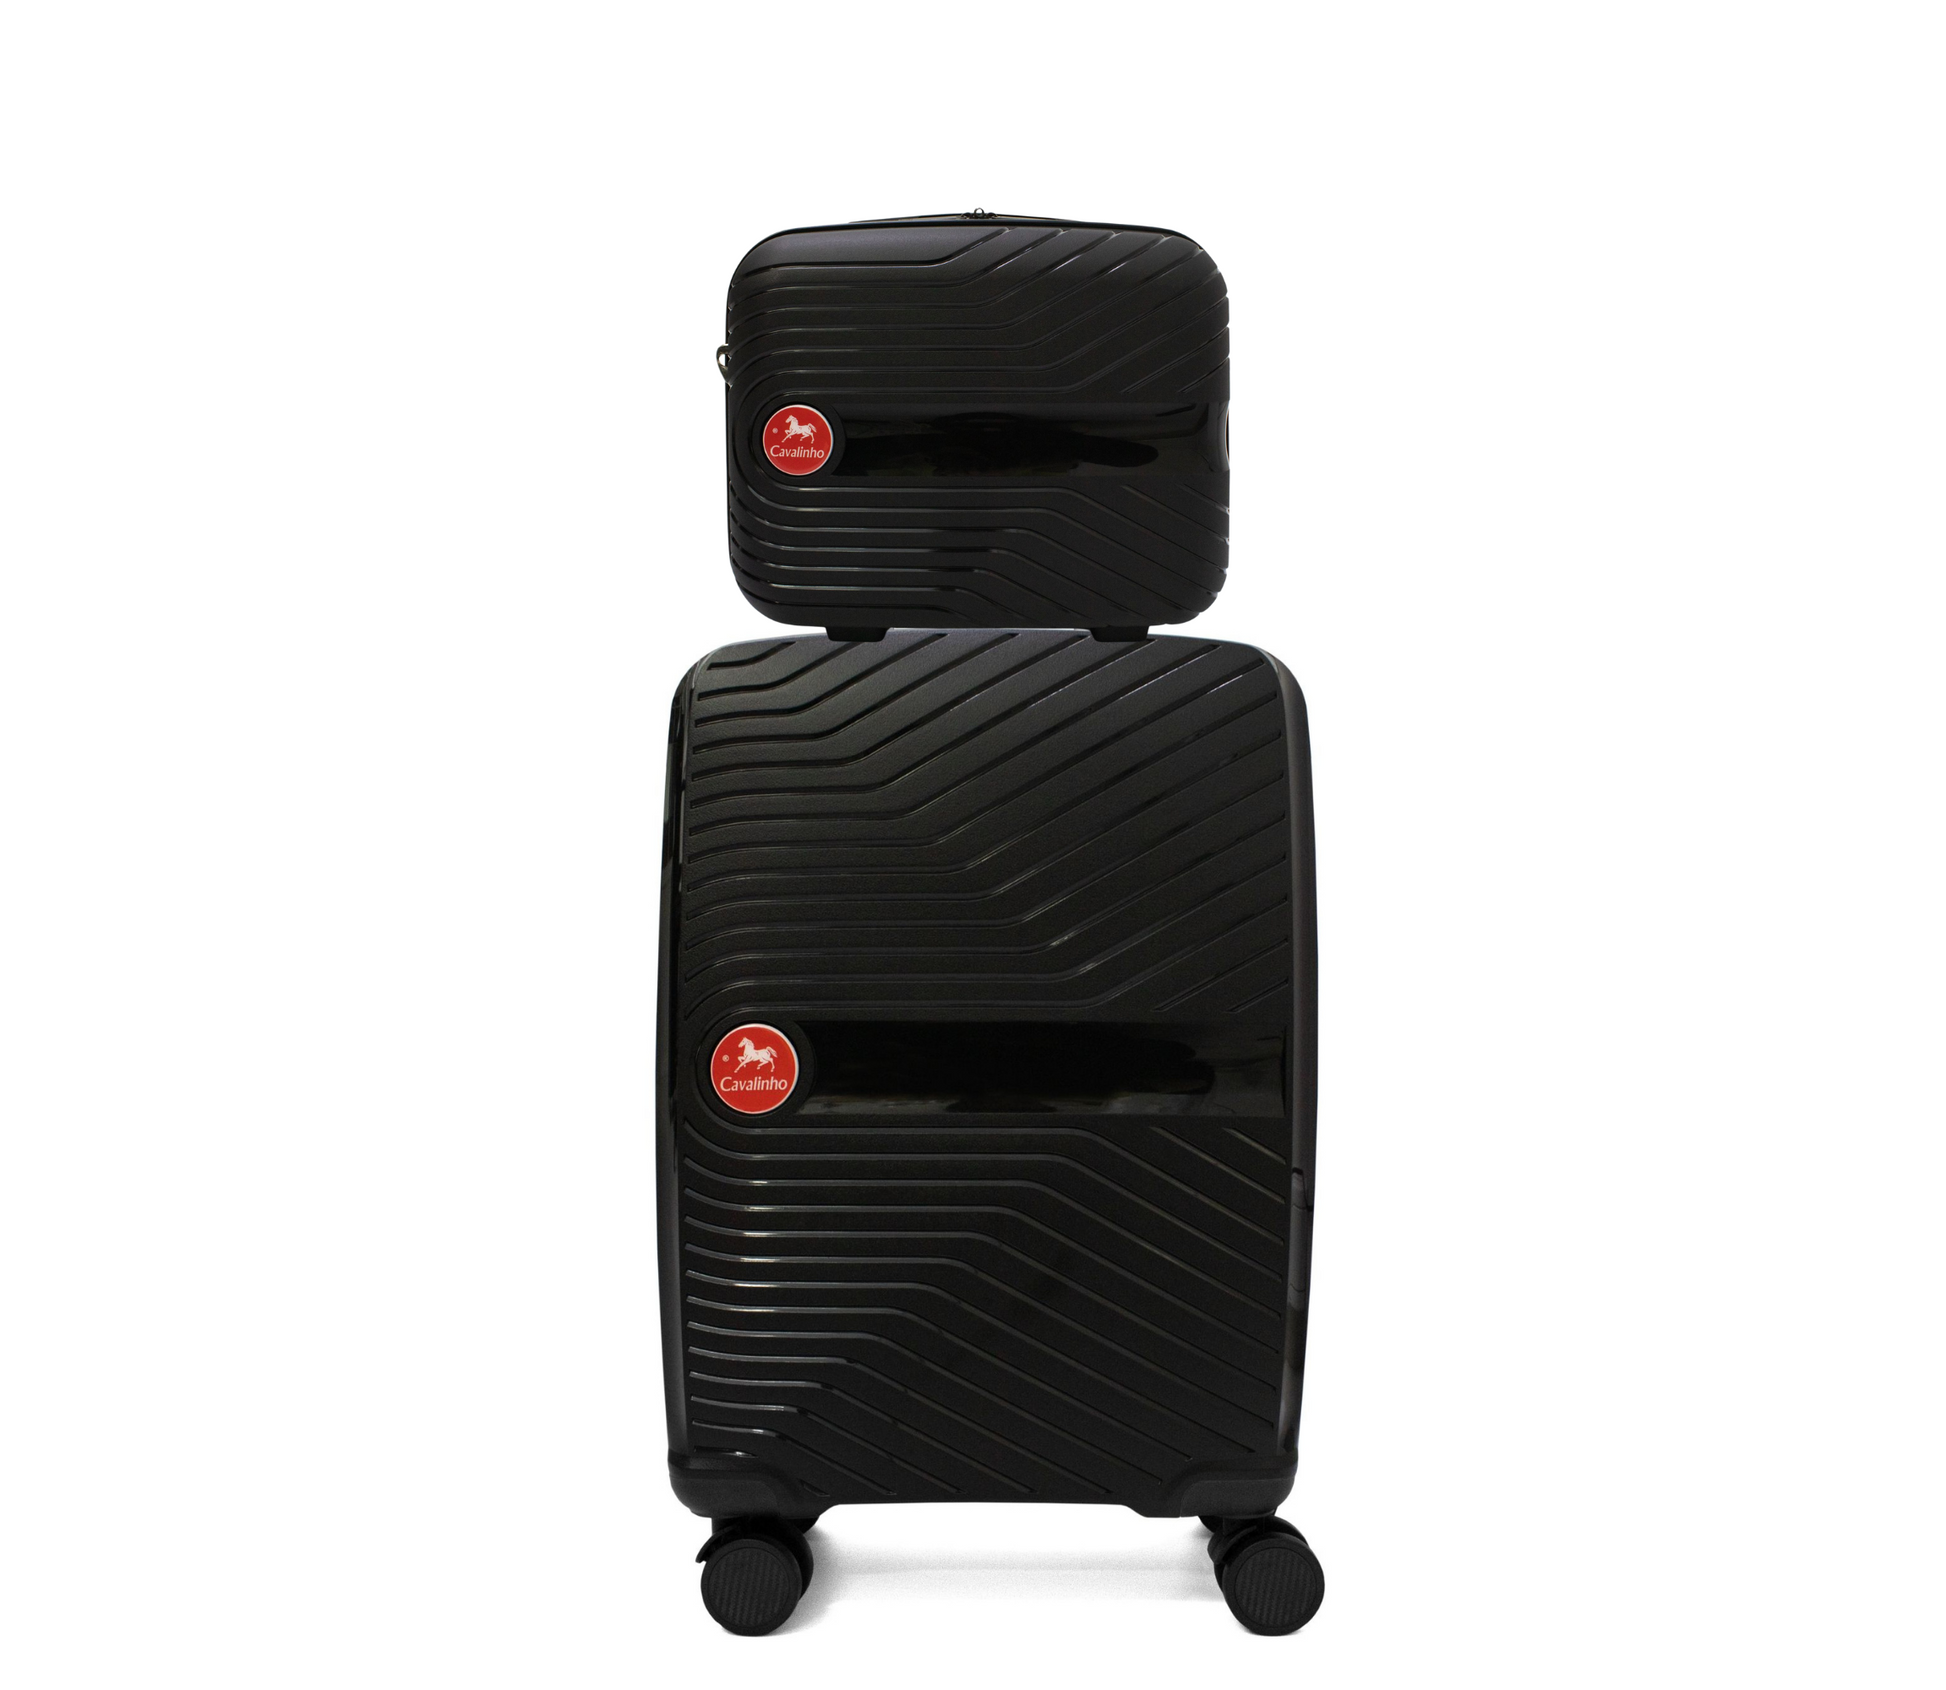 Cavalinho Canada & USA Colorful 2 Piece Luggage Set (15" & 19") - Black Black - 68020004.0101.S1519._1